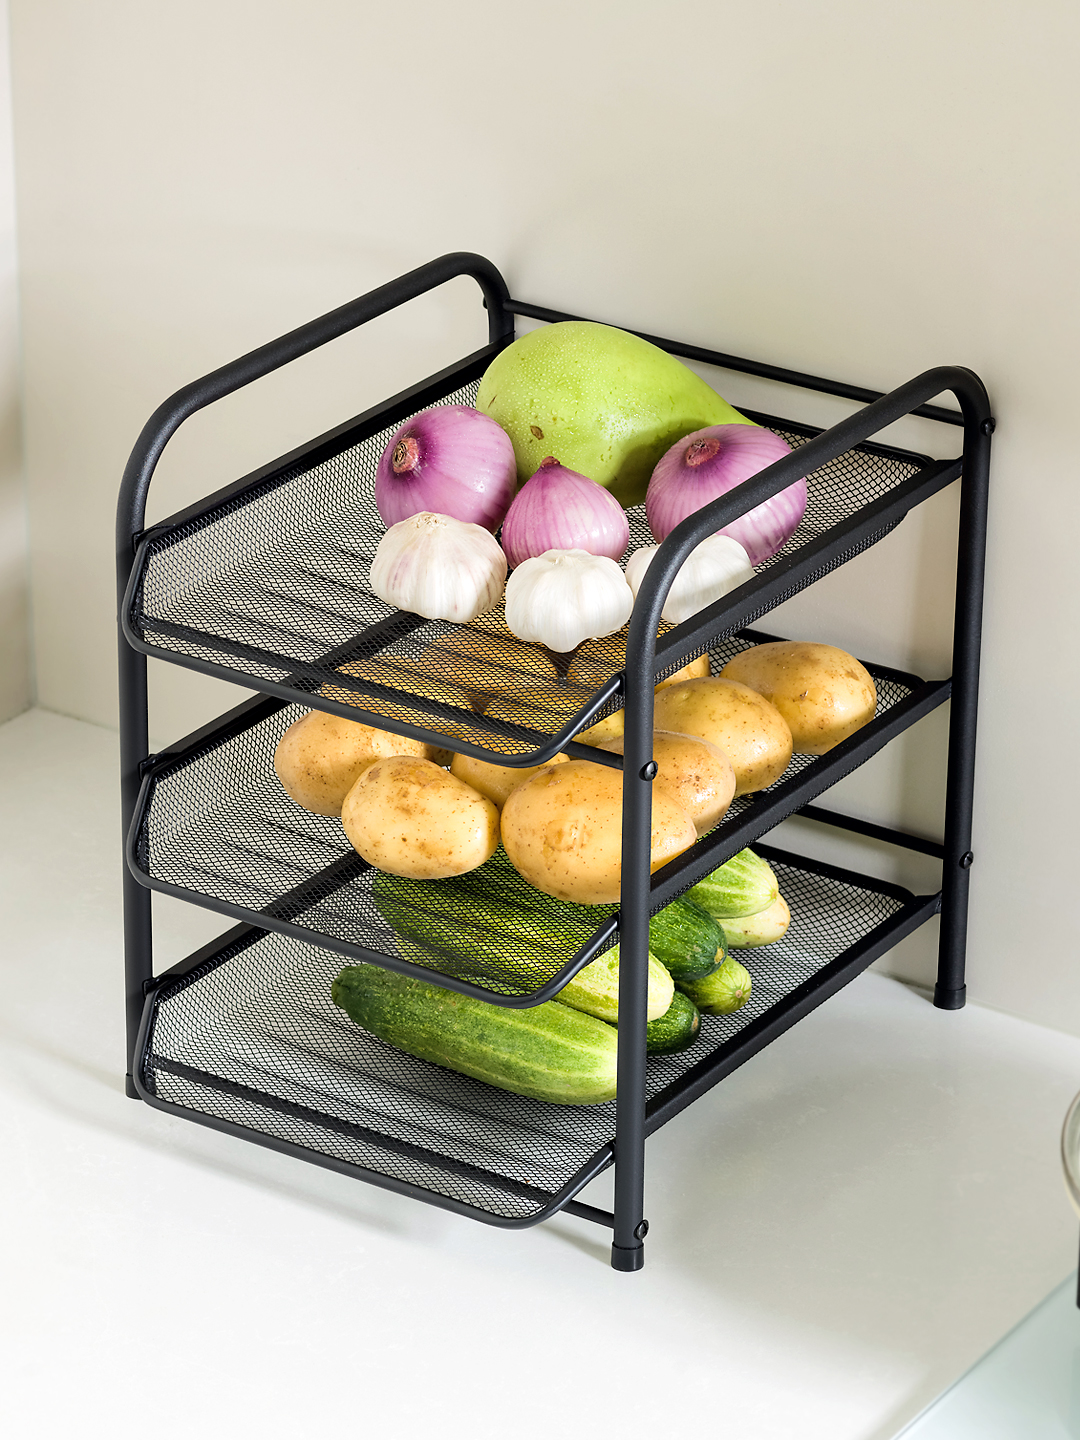 多層抽拉式置物架方便收納廚房蔬果打造整潔舒適廚房空間